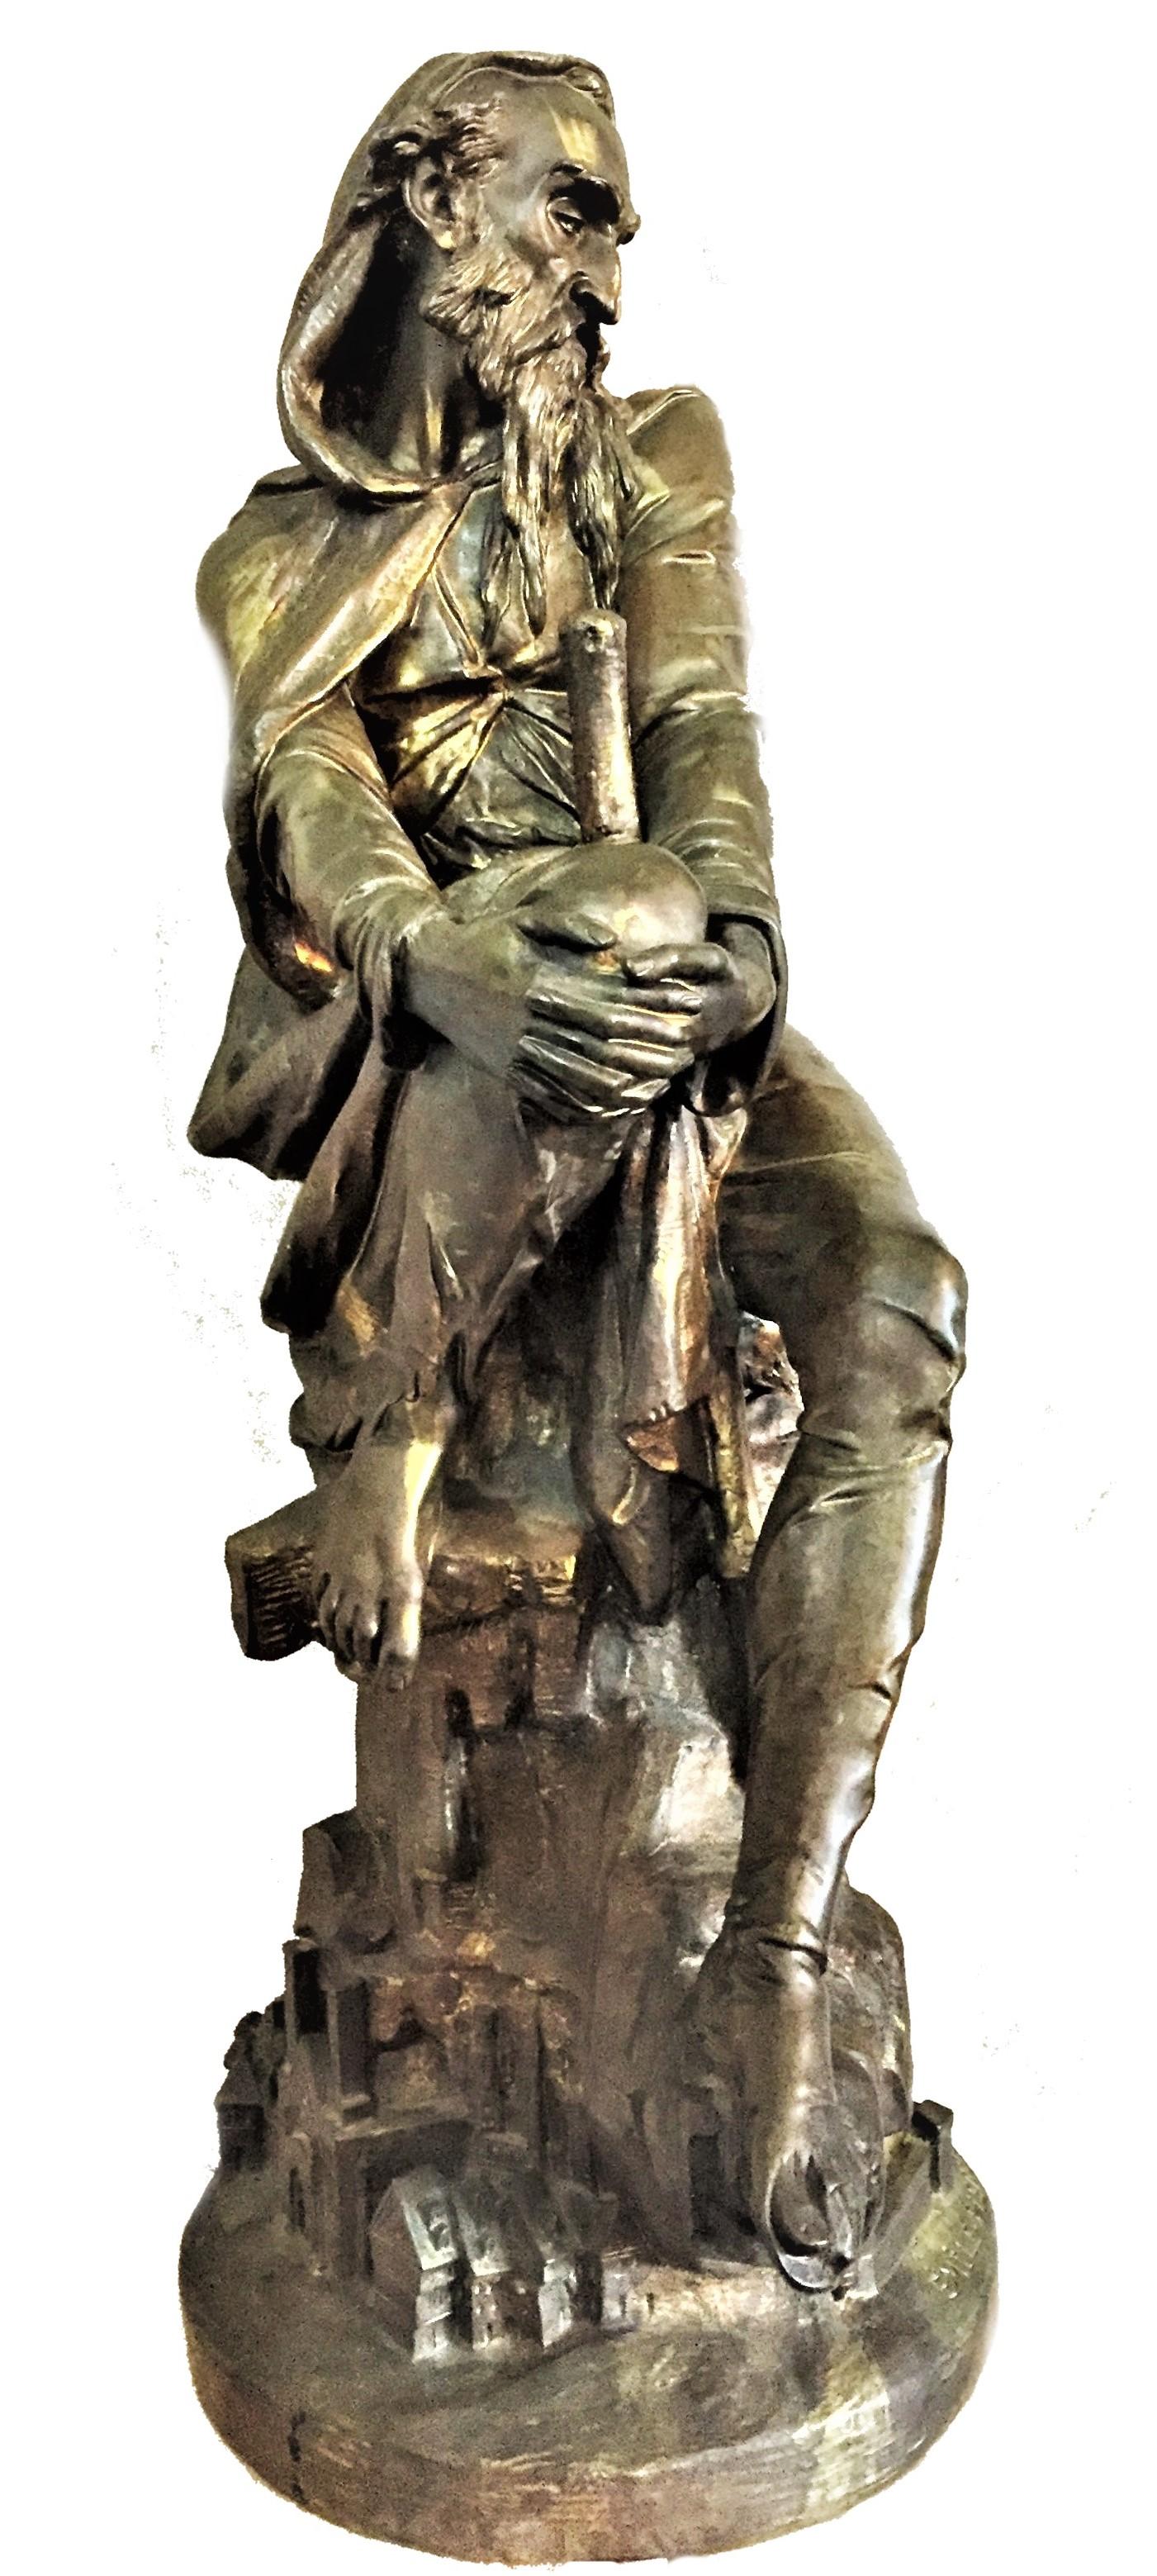 Émile Hébert, le vagabond, sculpture française en bronze patiné de la Belle Époque, vers les années 1880

Dimensions :
Hauteur 24.75